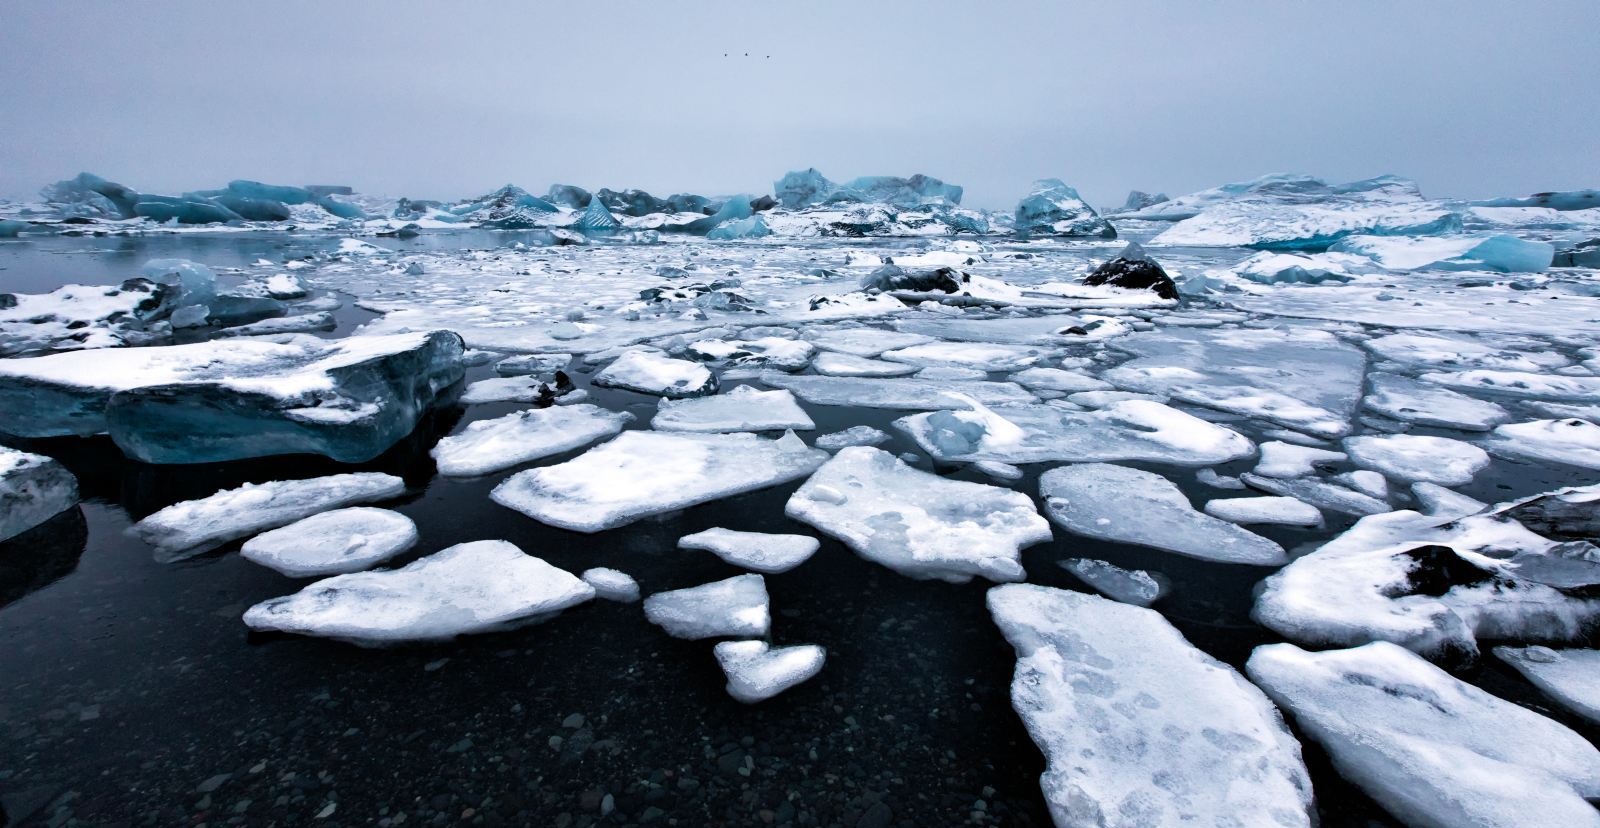 各类奇特冰川地貌在这里纵横交错,地壳活动的痕迹随处可见